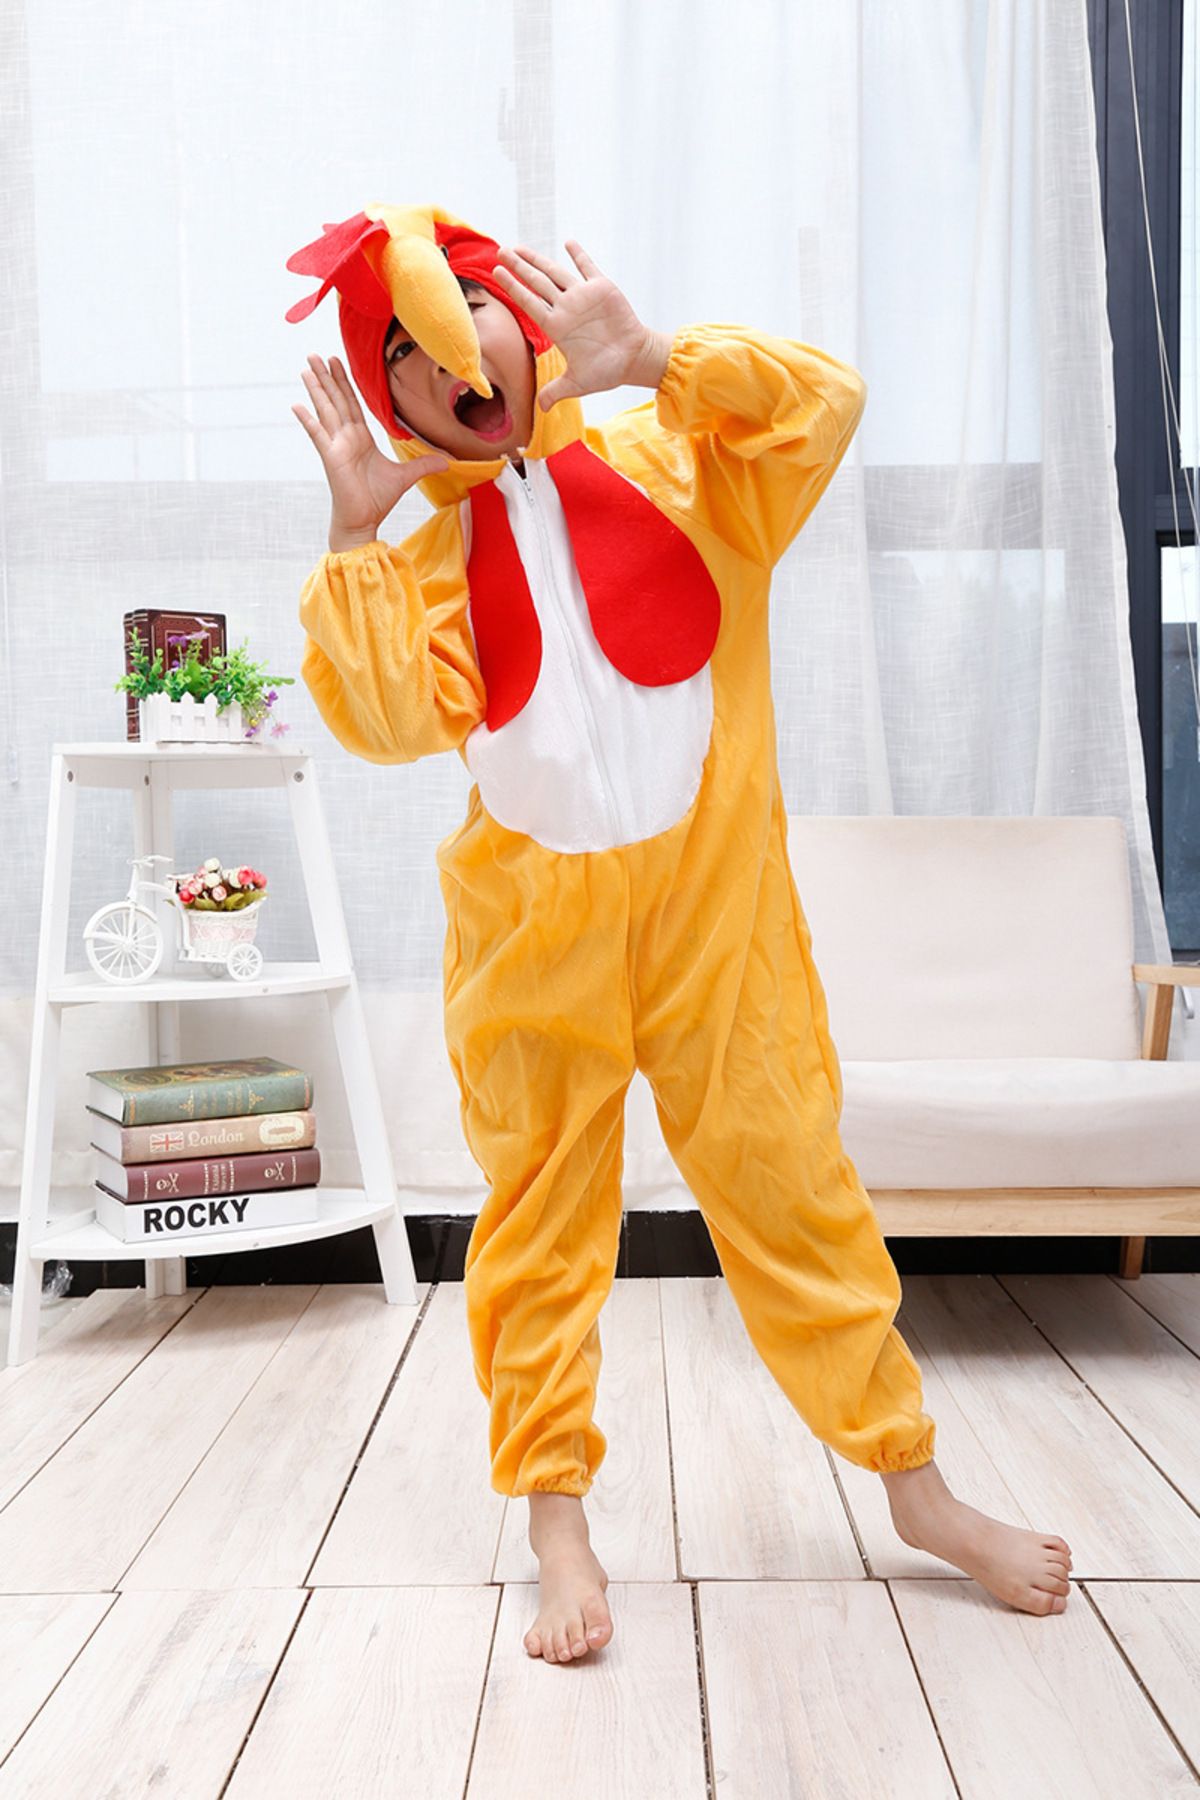 Skygo Çocuk Horoz Kostümü - Tavuk Kostümü 2-3 Yaş 80 cm